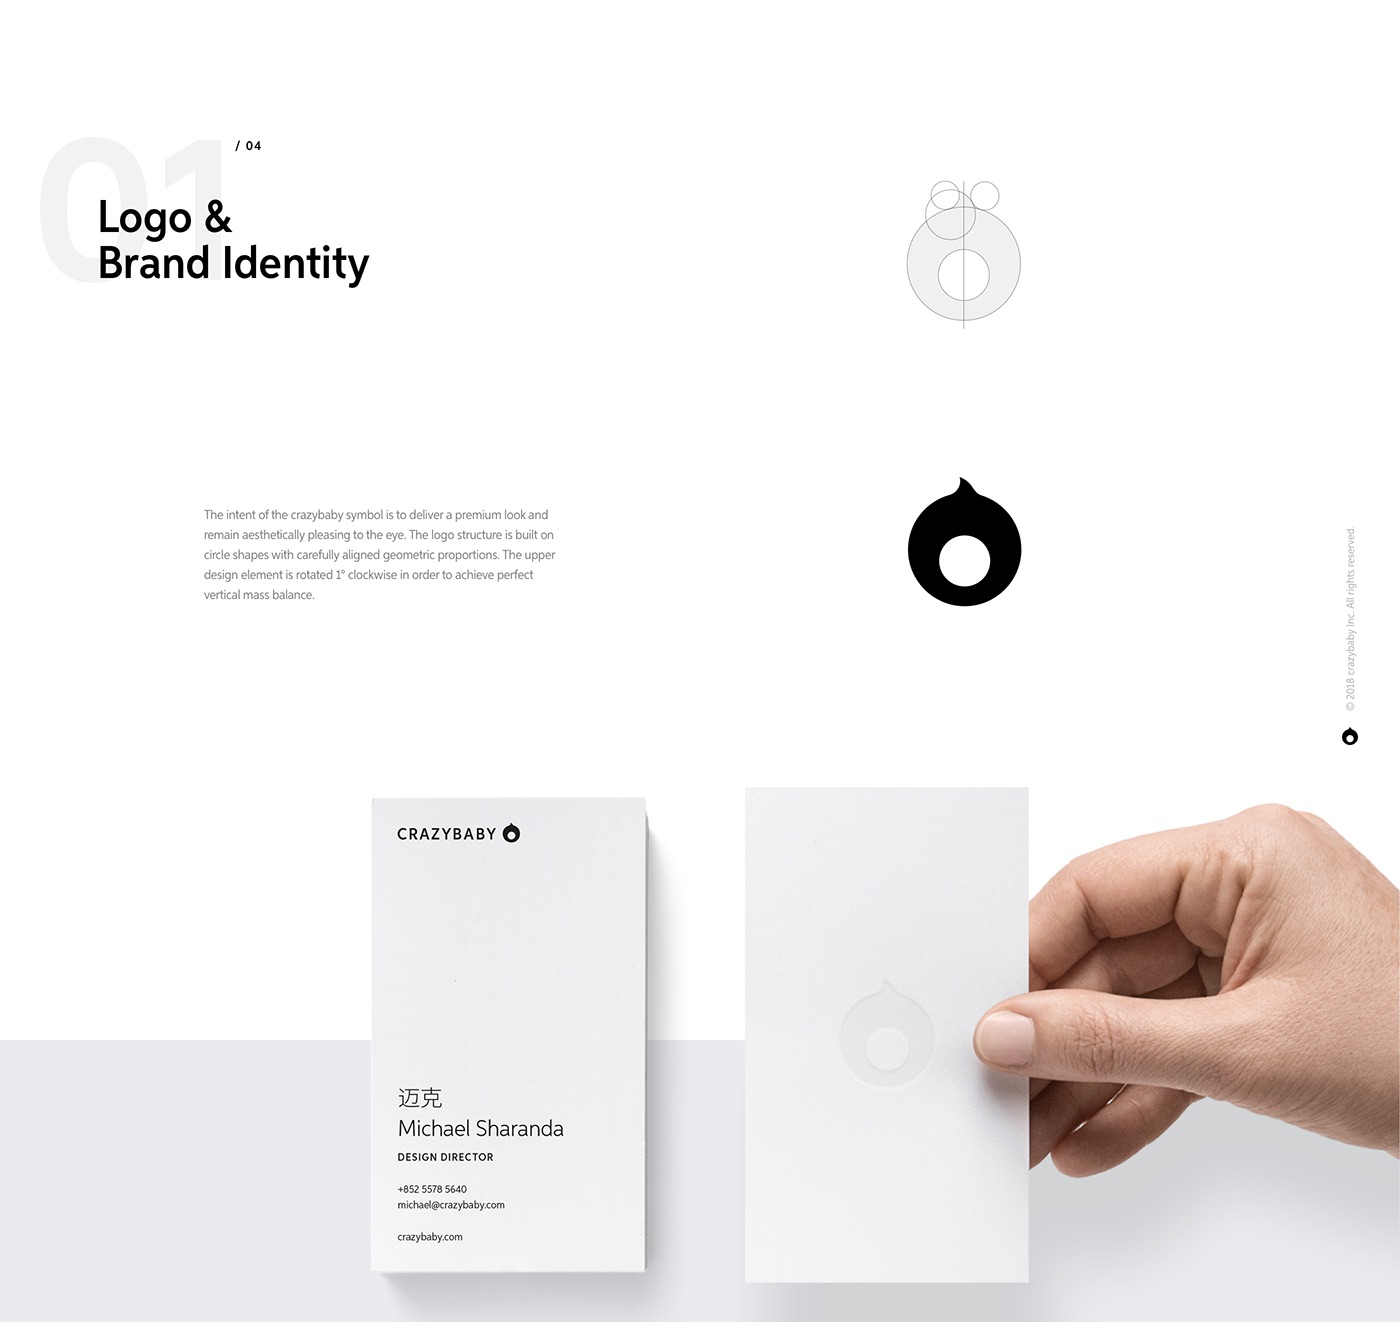 branding  app Webdesign logo UI ux ILLUSTRATION  Render 3D music